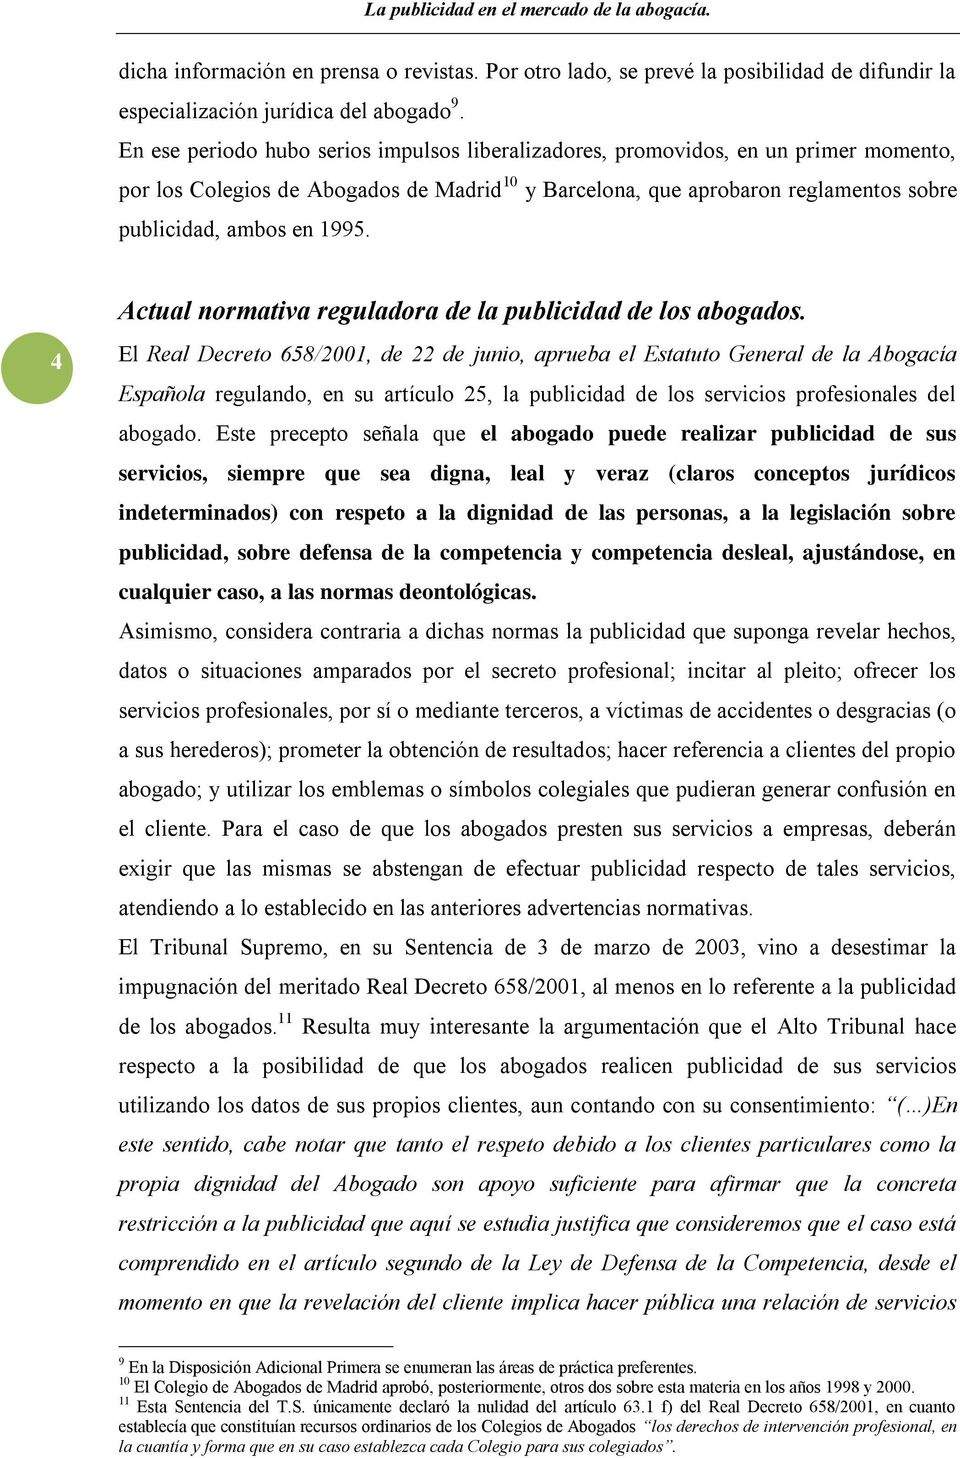 4 Actual normativa reguladora de la publicidad de los abogados.